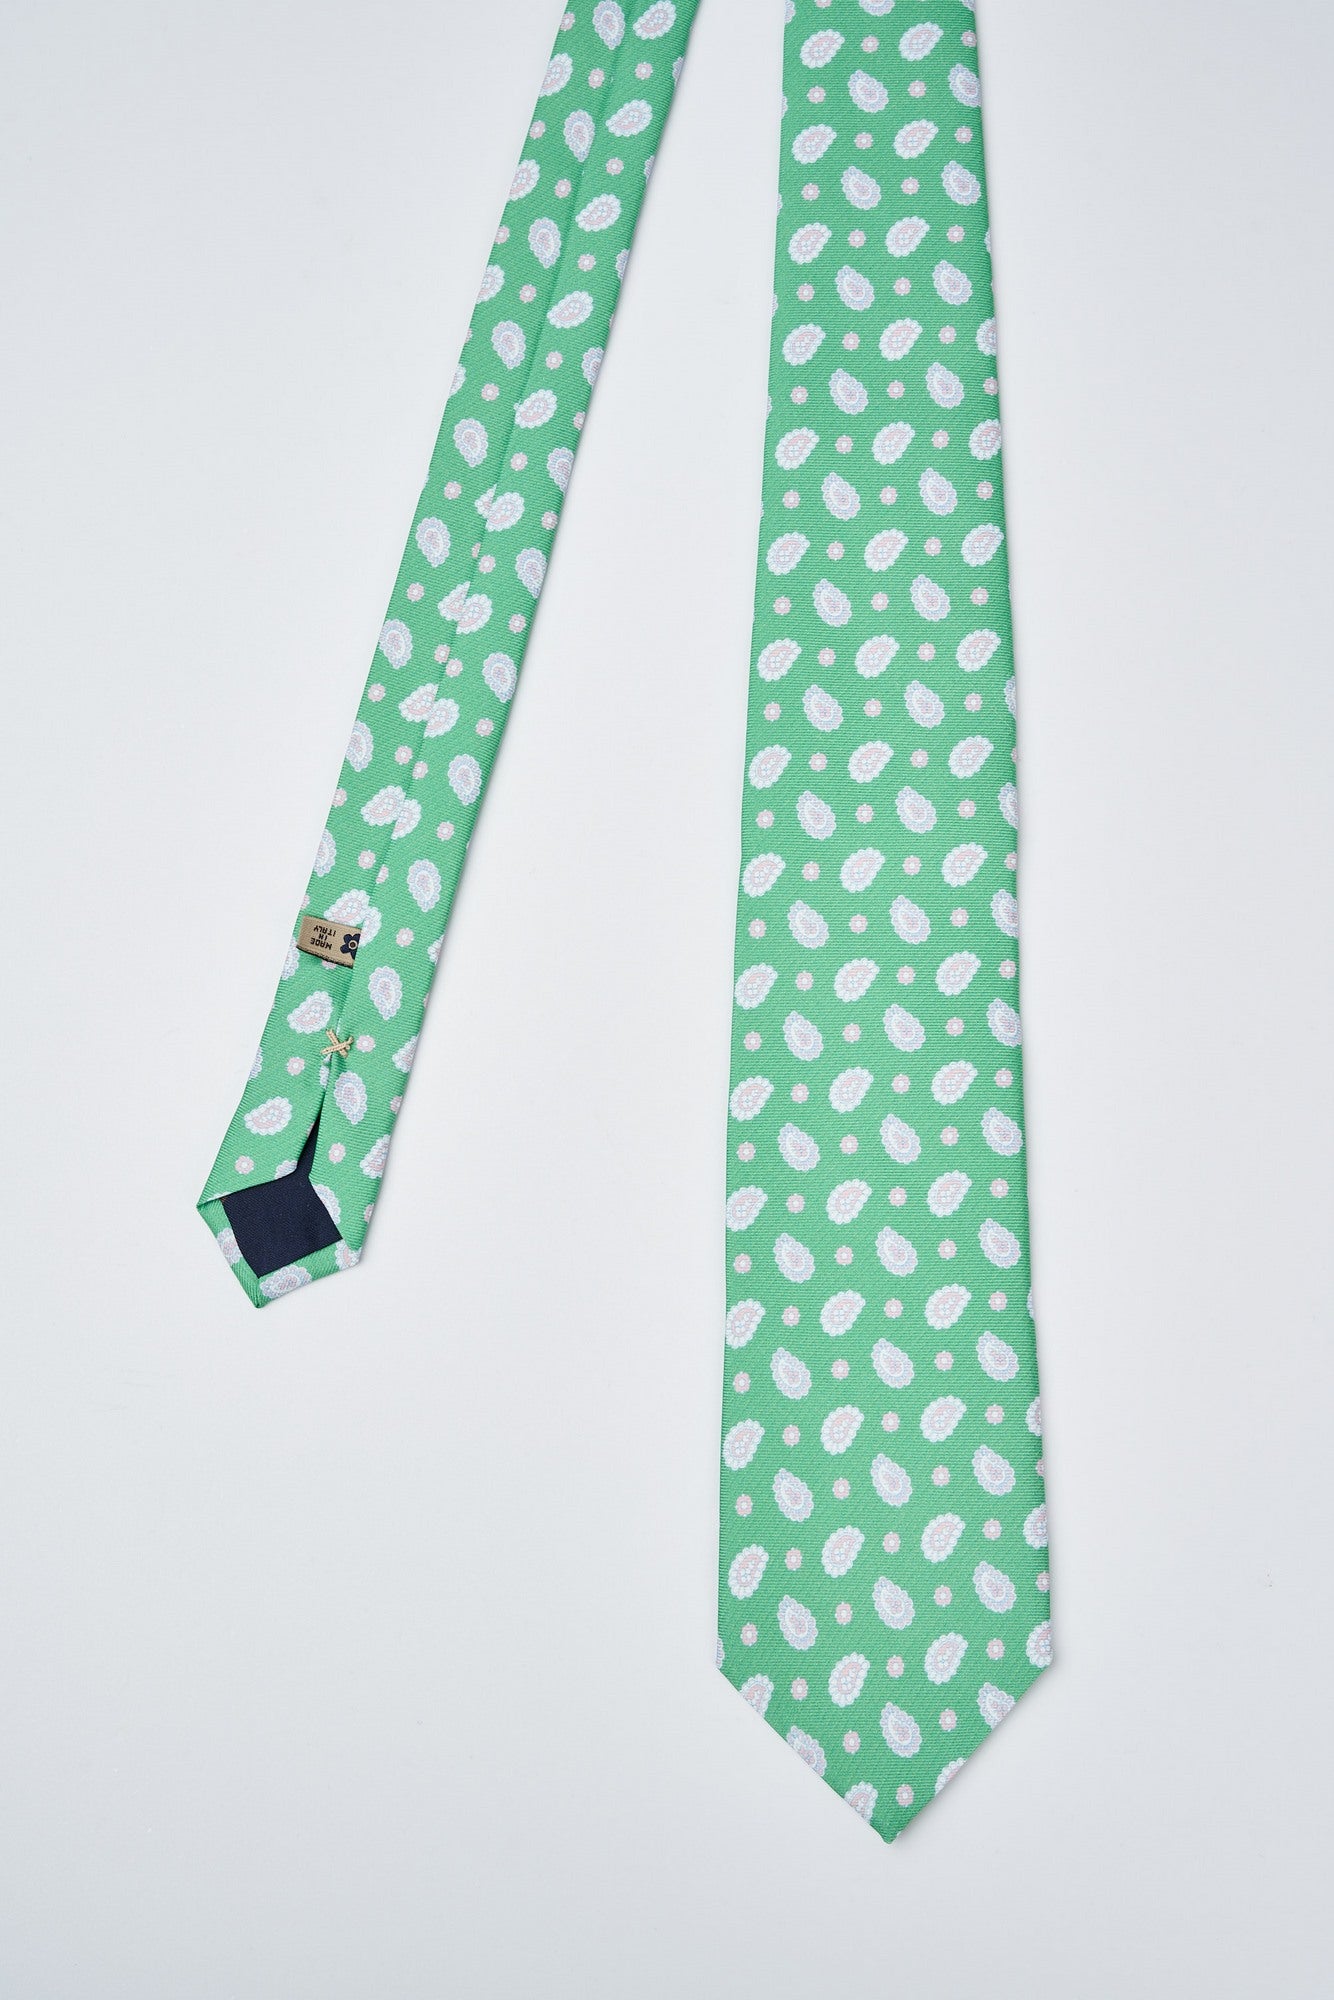 Handmade silk tie with paisley print - 2